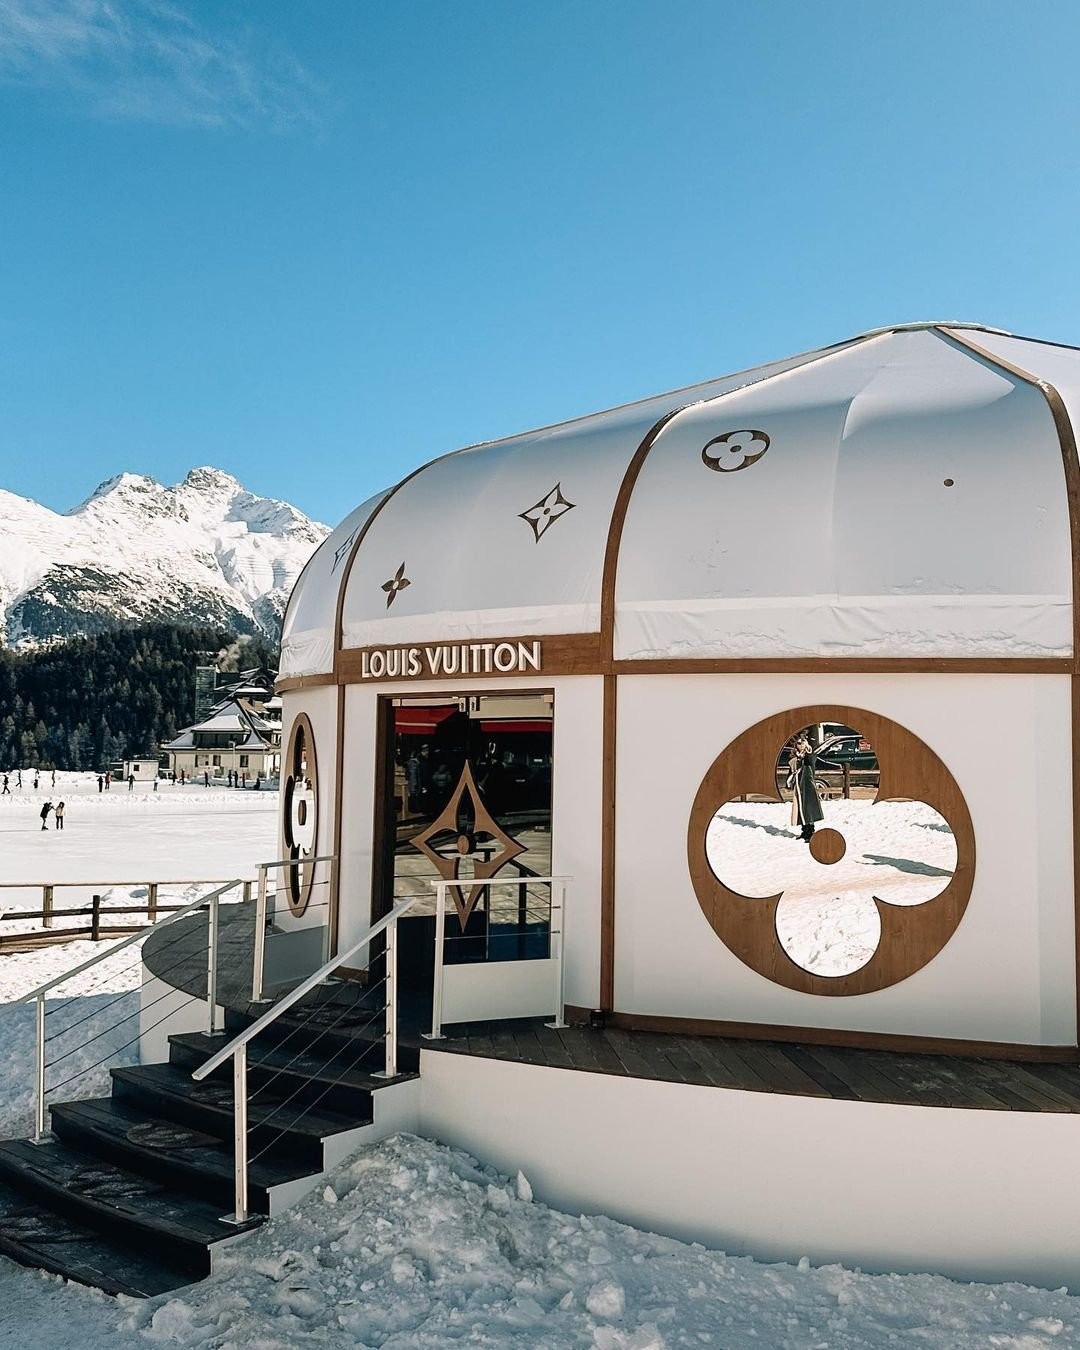 Louis Vuitton Yurt Pop-Up in St. Moritz